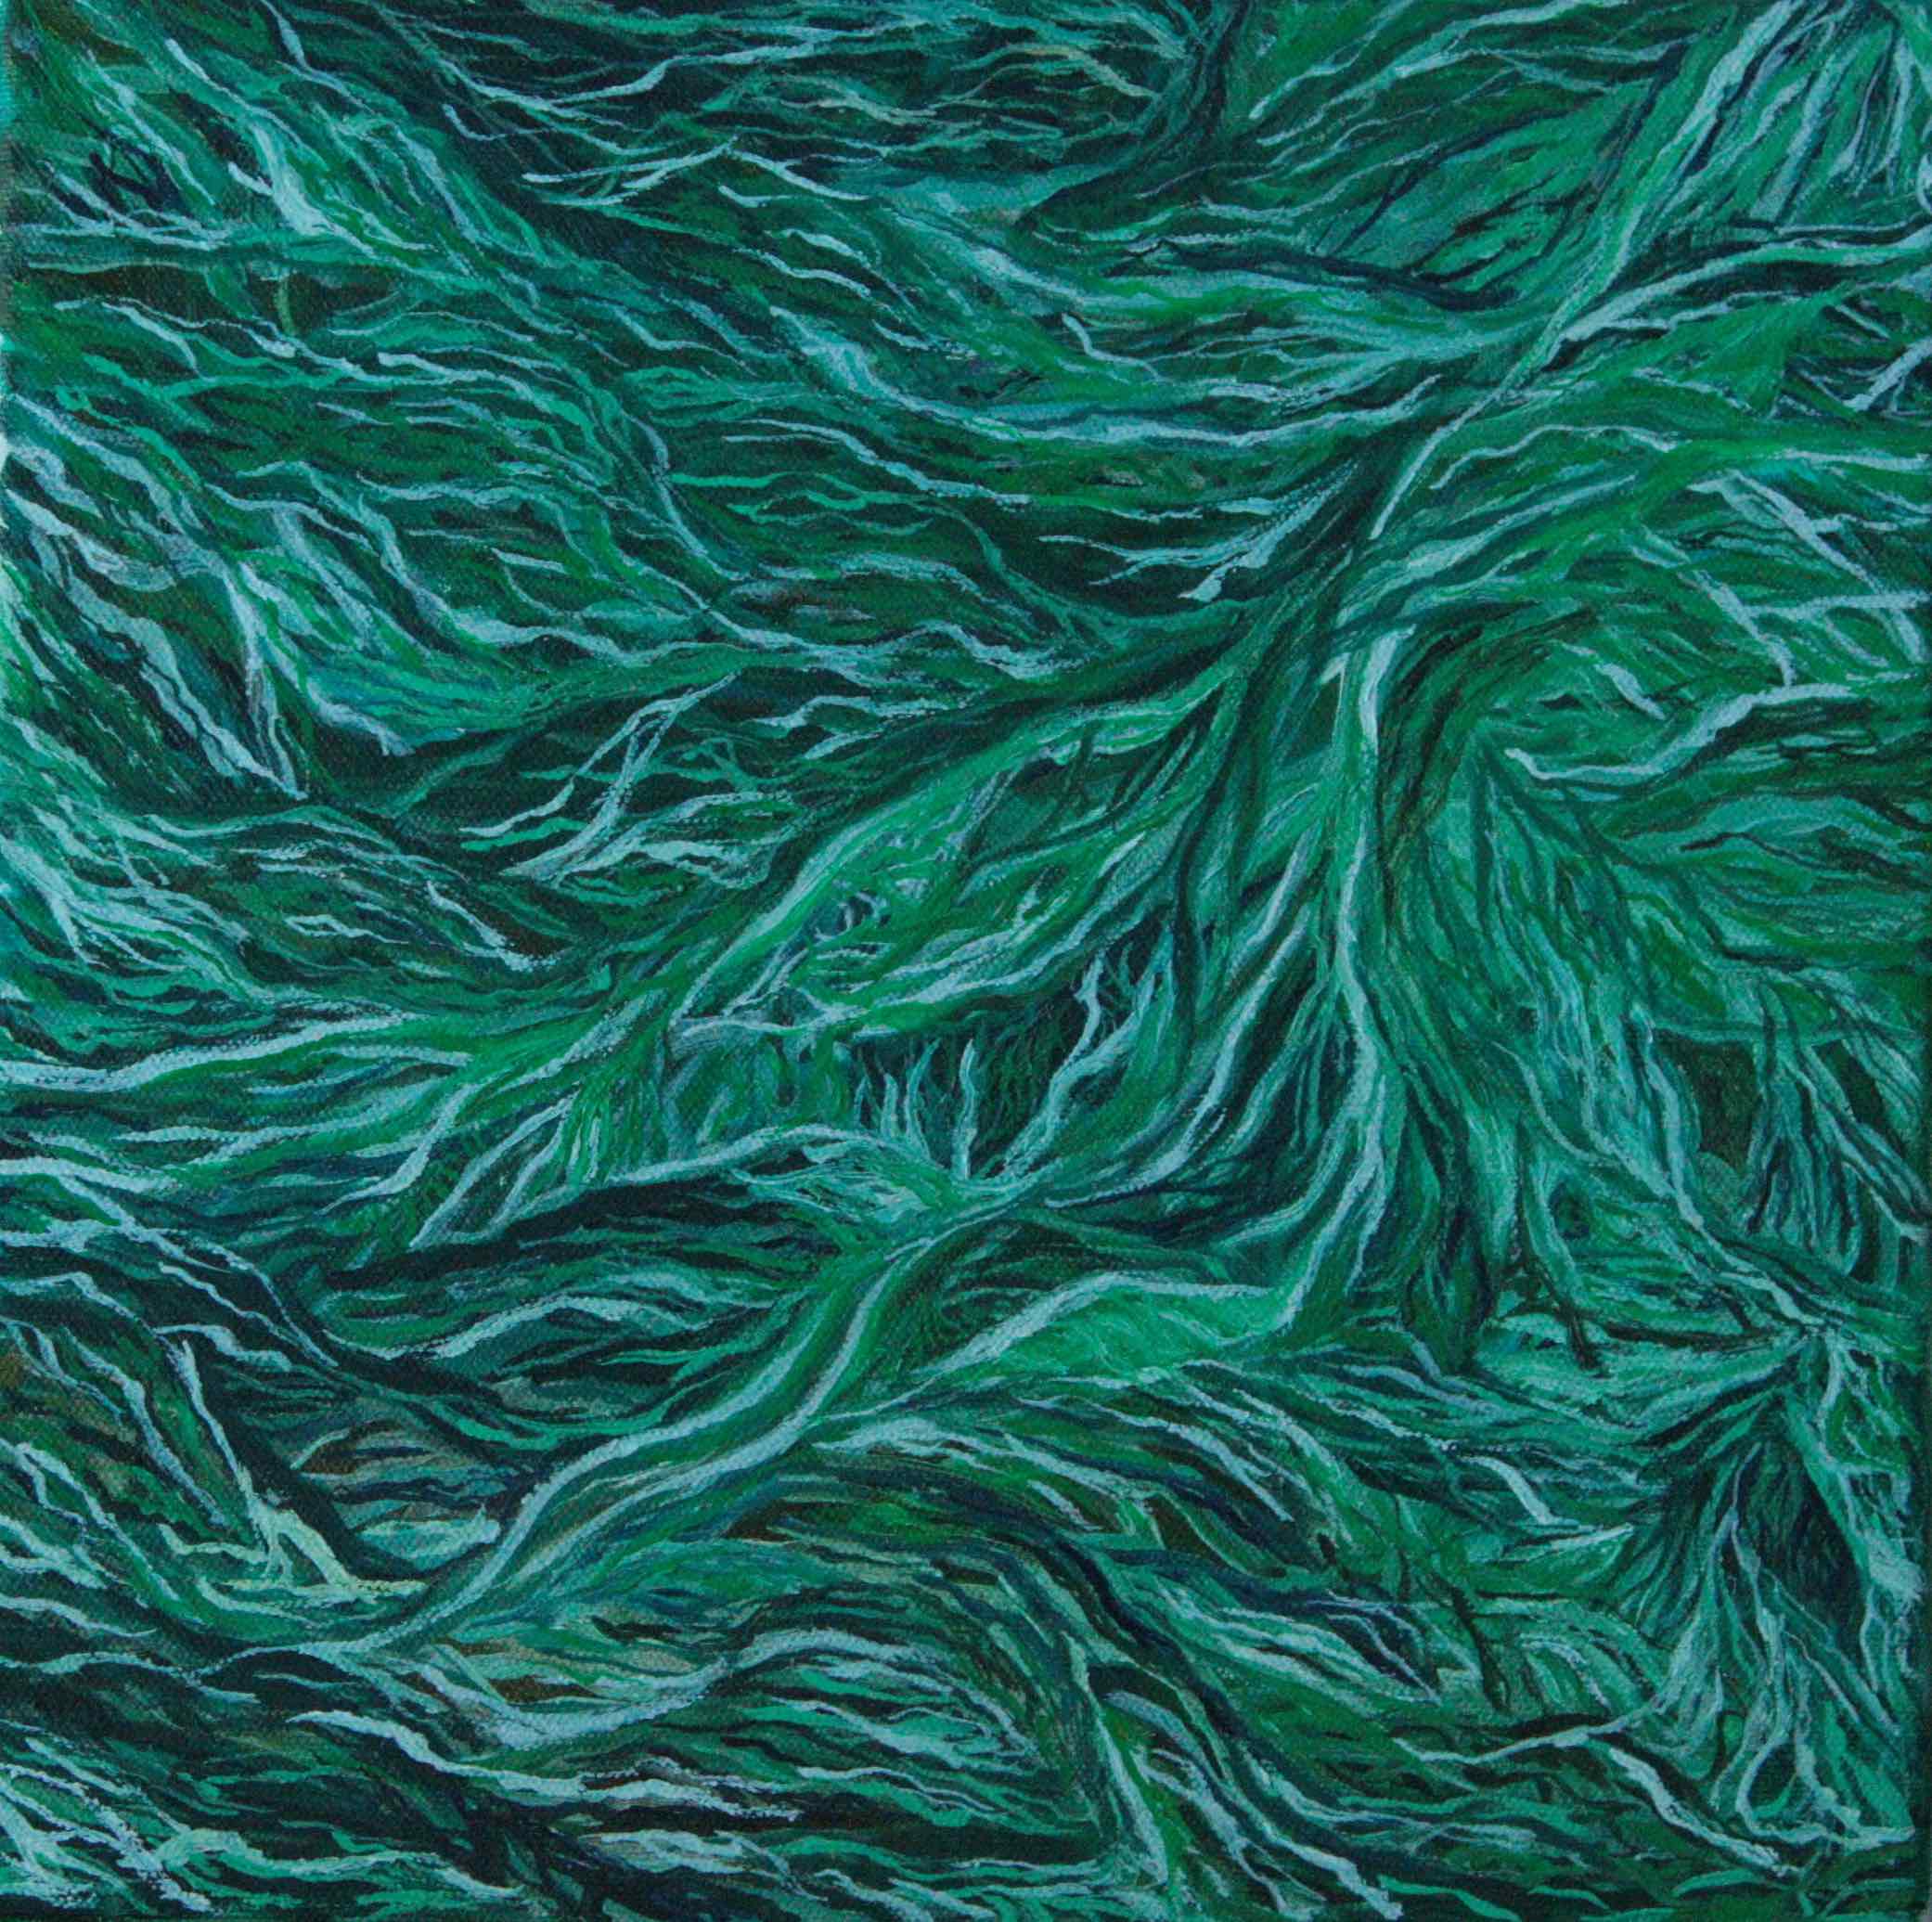 Abstrakti maalaus, jossa on geologisia kerrostumia. Vihreän ja valkoisen sävyisiä laineita ja viivoja.